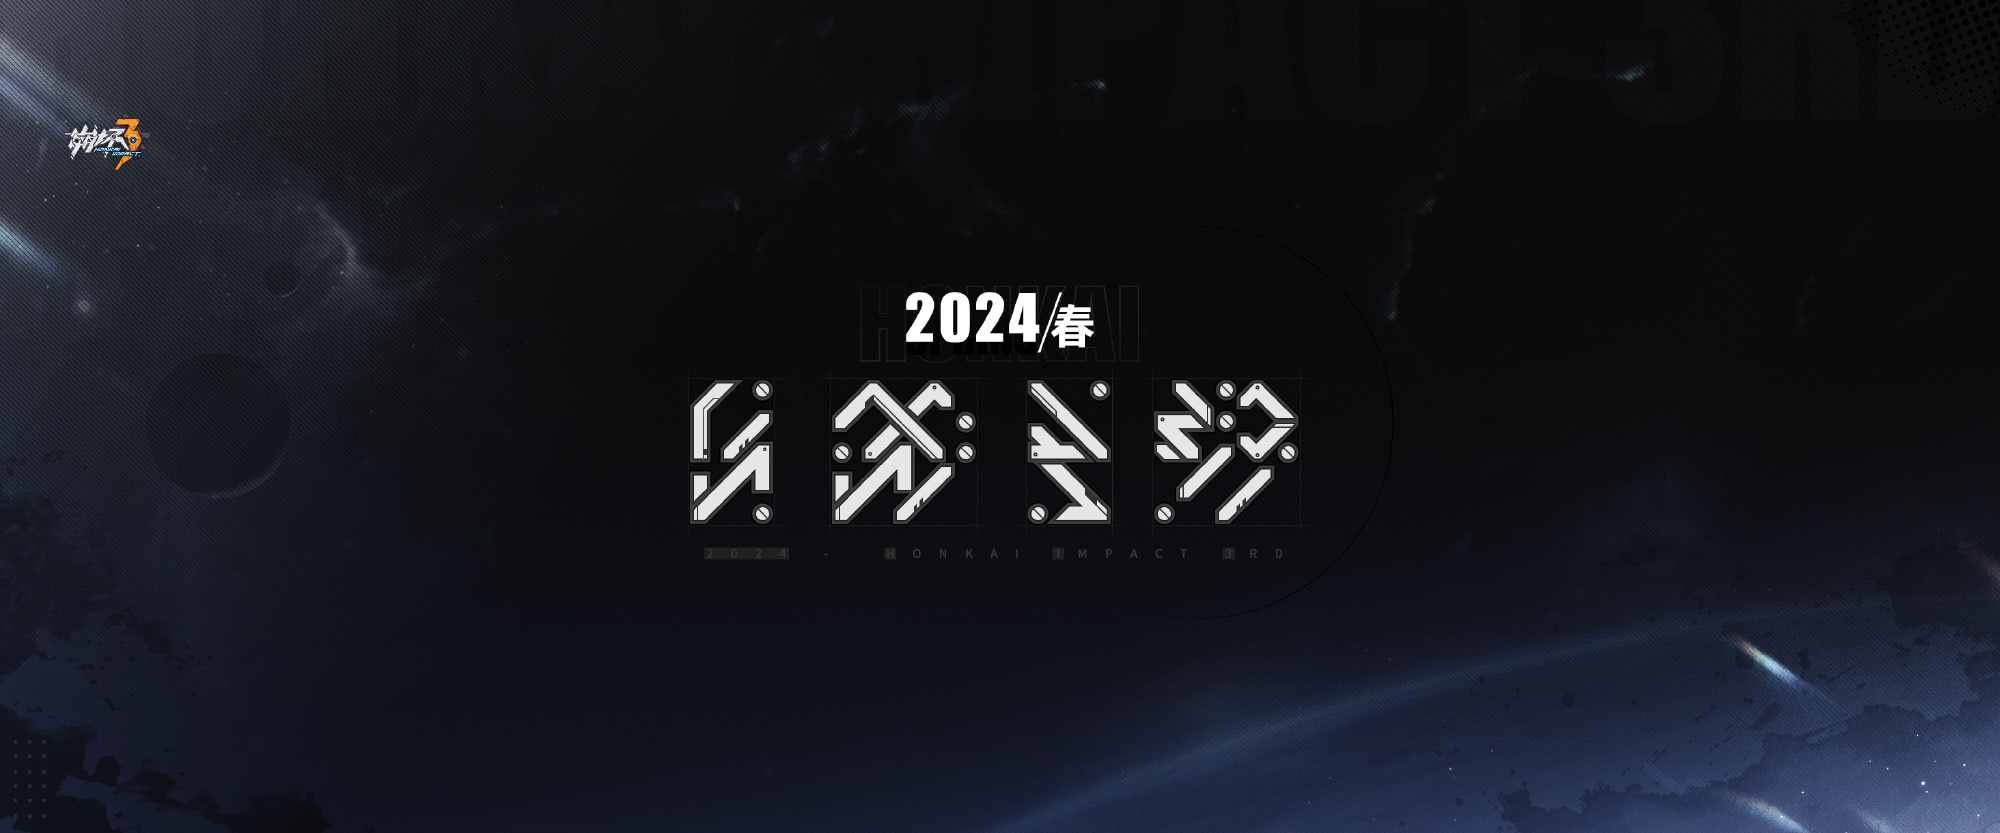 米哈游《崩坏3》第二部正式公开 明年春季上线